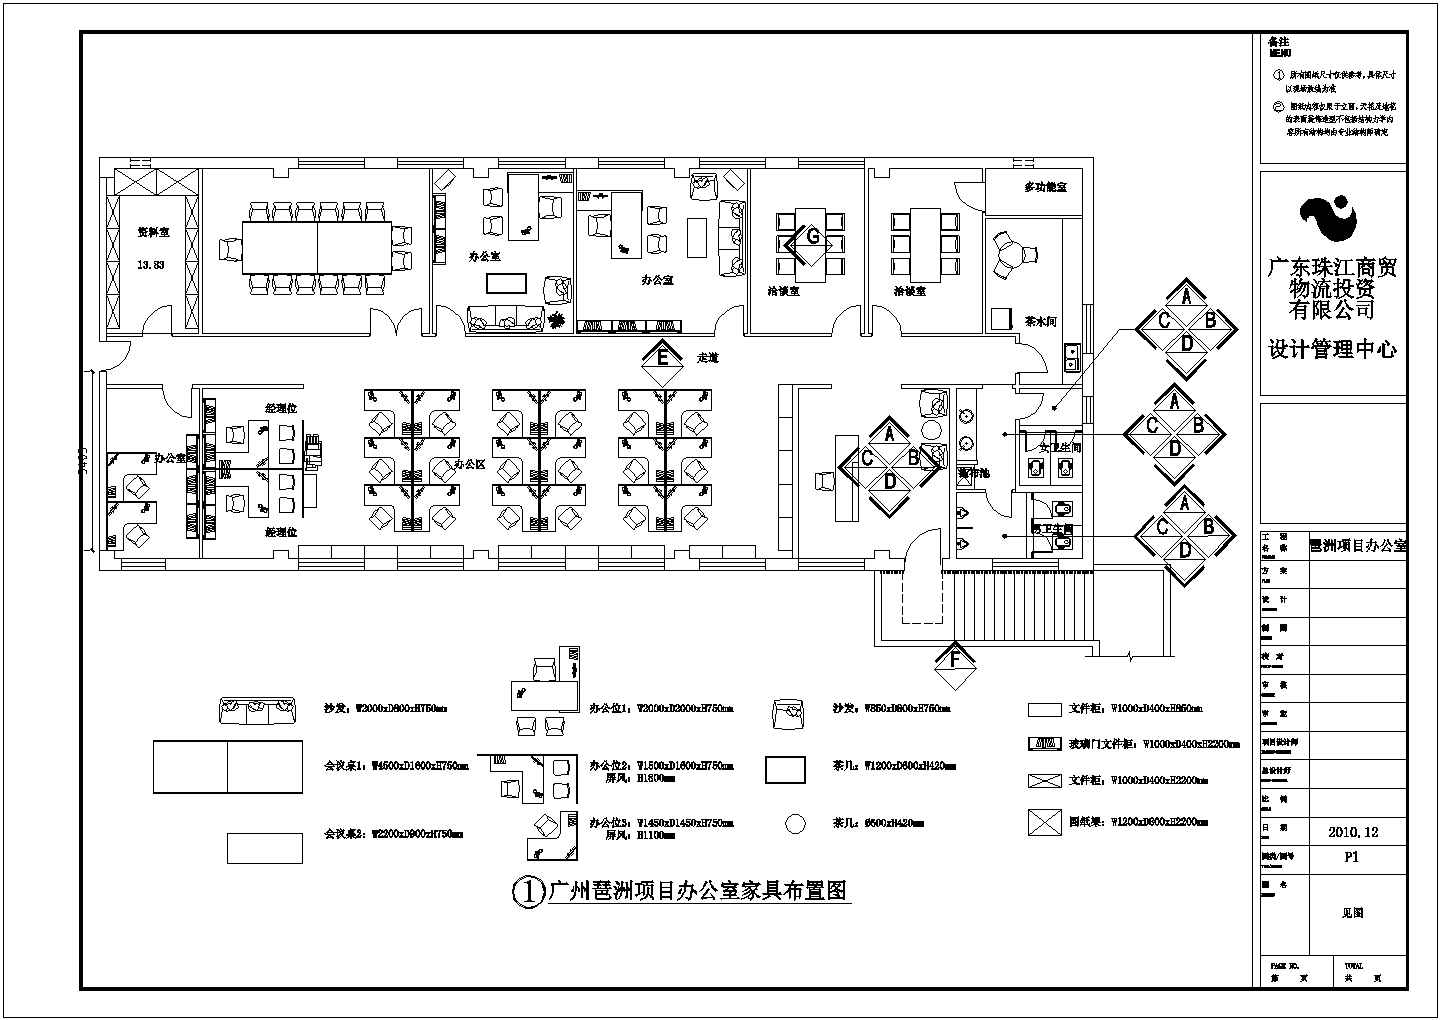 广州某工程项目办公室简单设计图纸